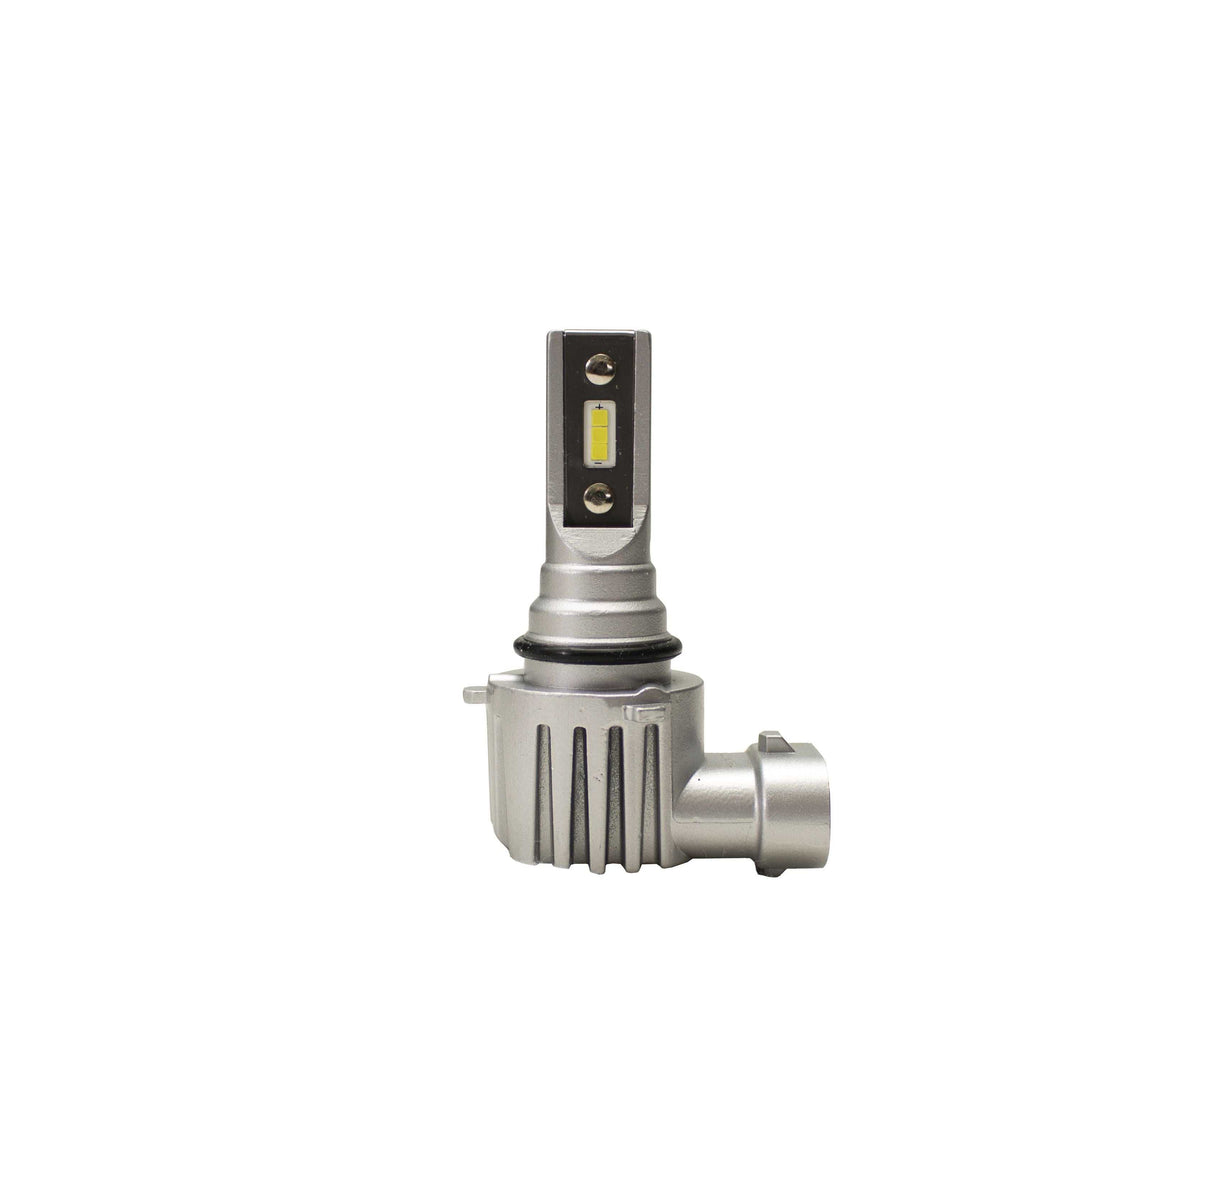 RSPNP9006 Driving/ Fog Light Bulb